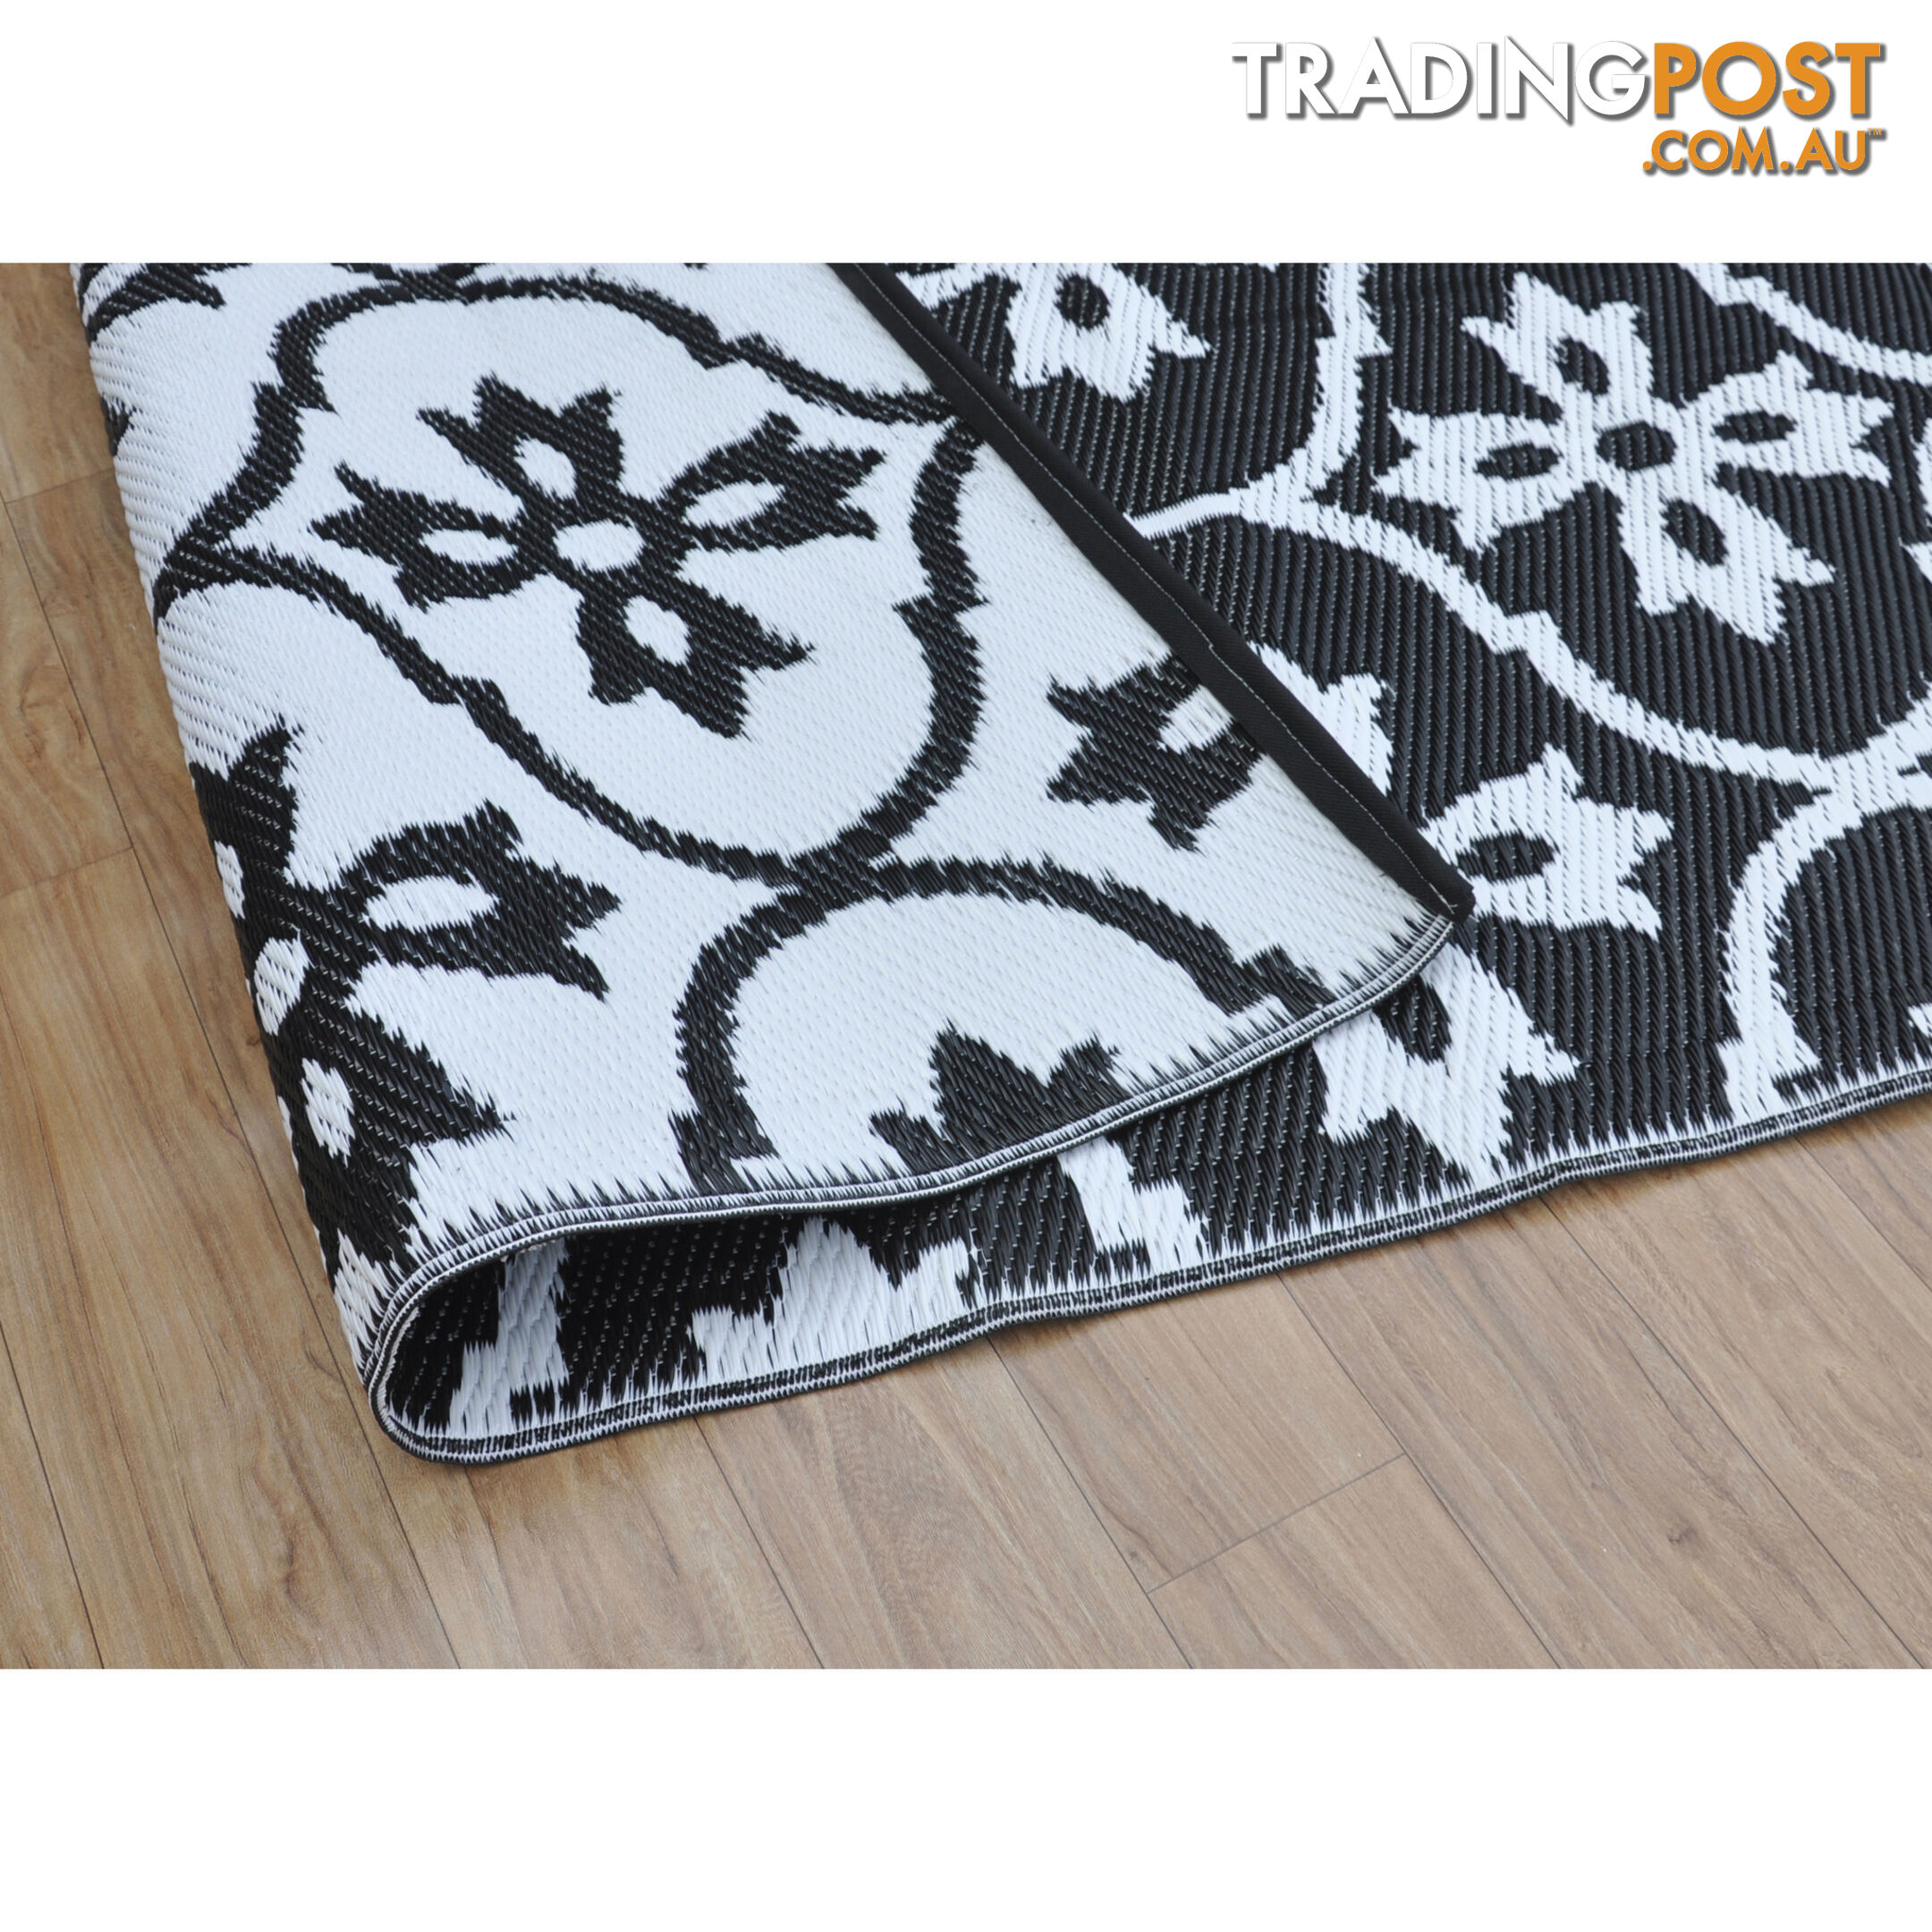 Moroccan Tile Reversable Rug Black & White 150x210cm